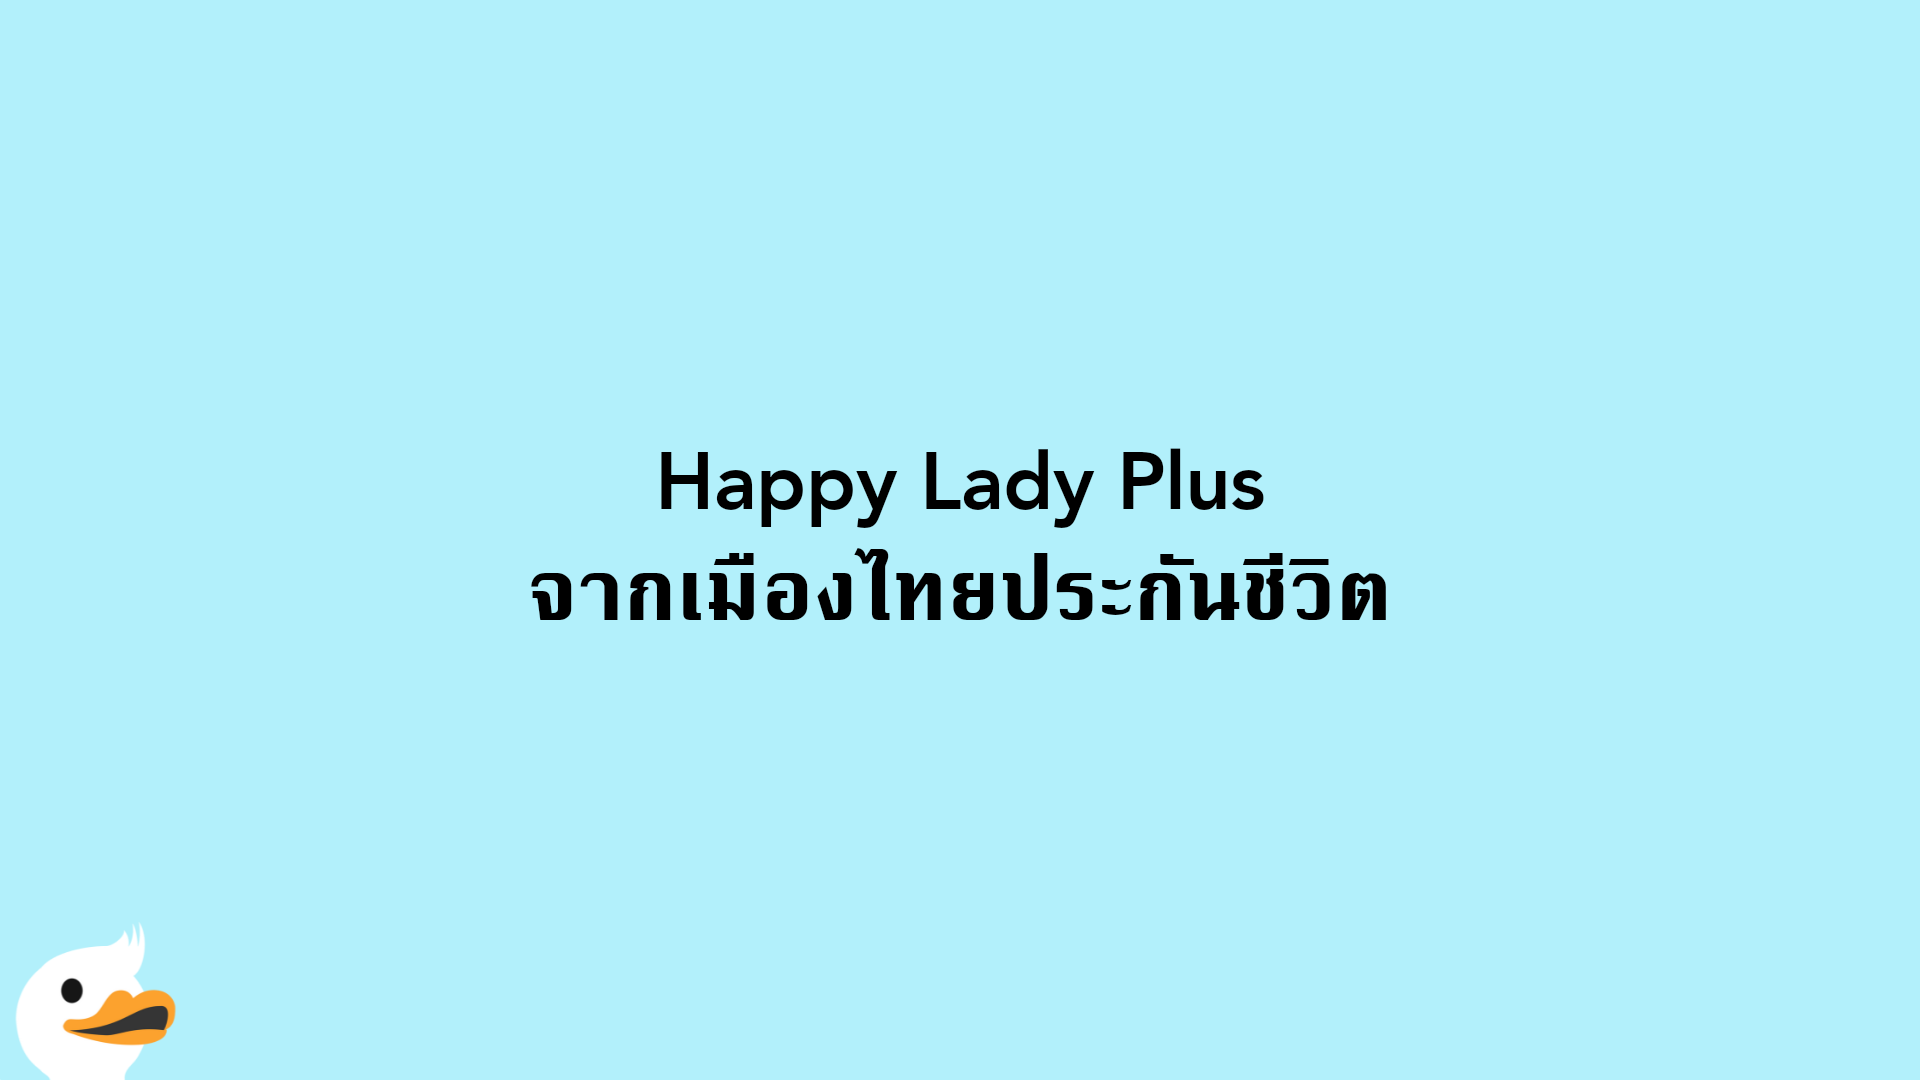 Happy Lady Plus จากเมืองไทยประกันชีวิต